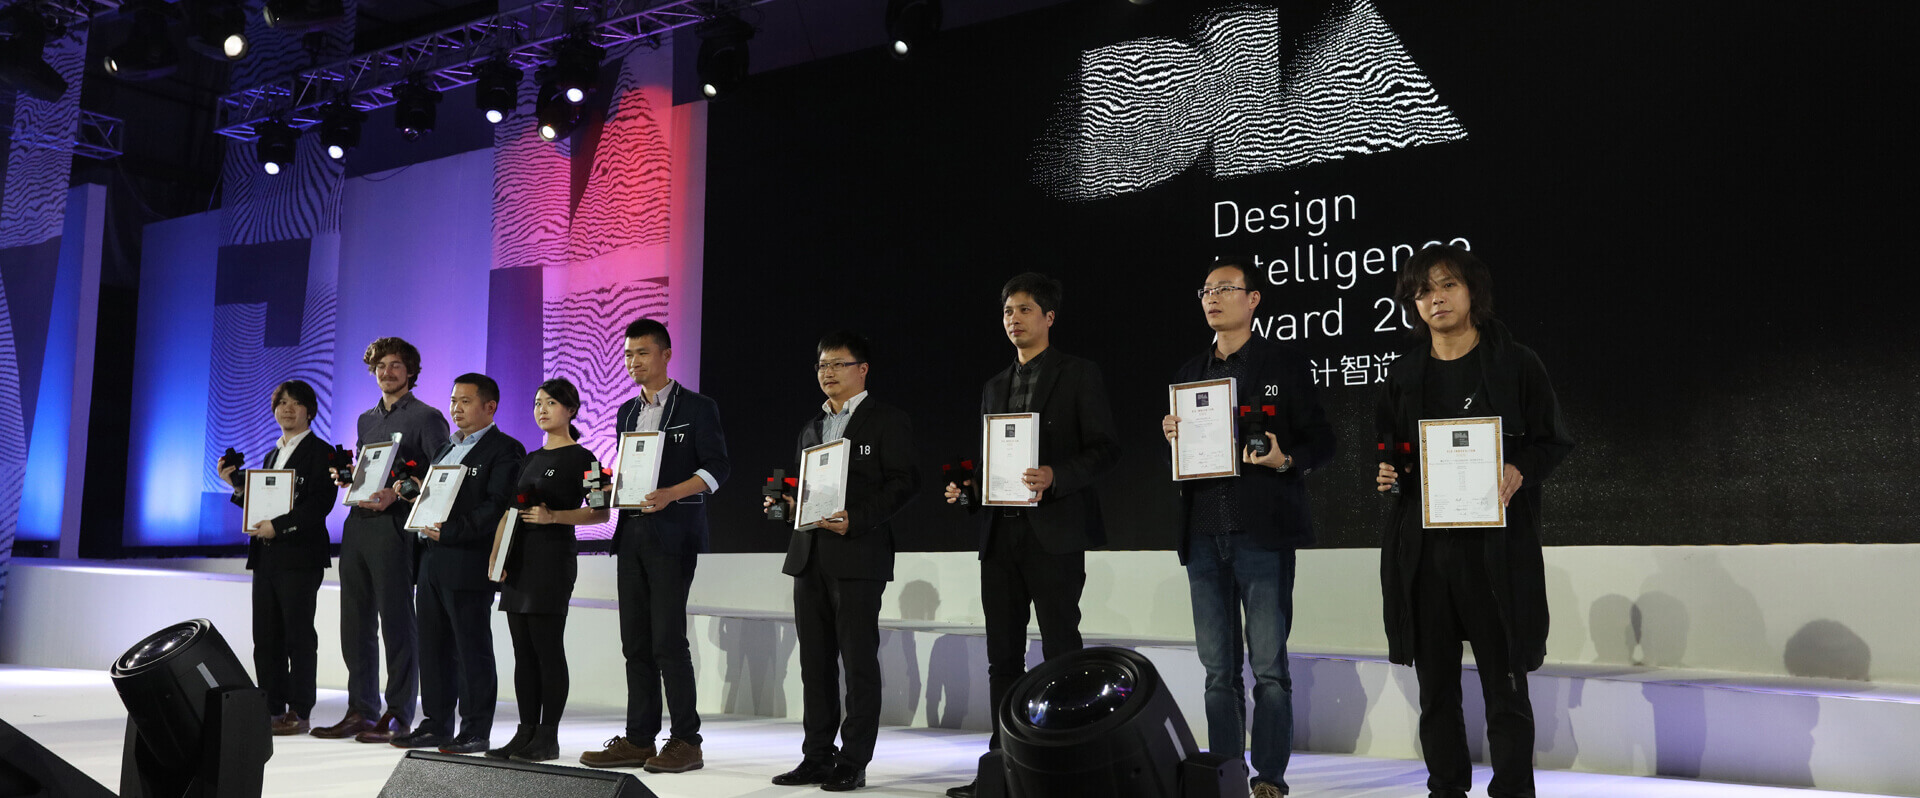 杭州工业设计公司荣获奖项